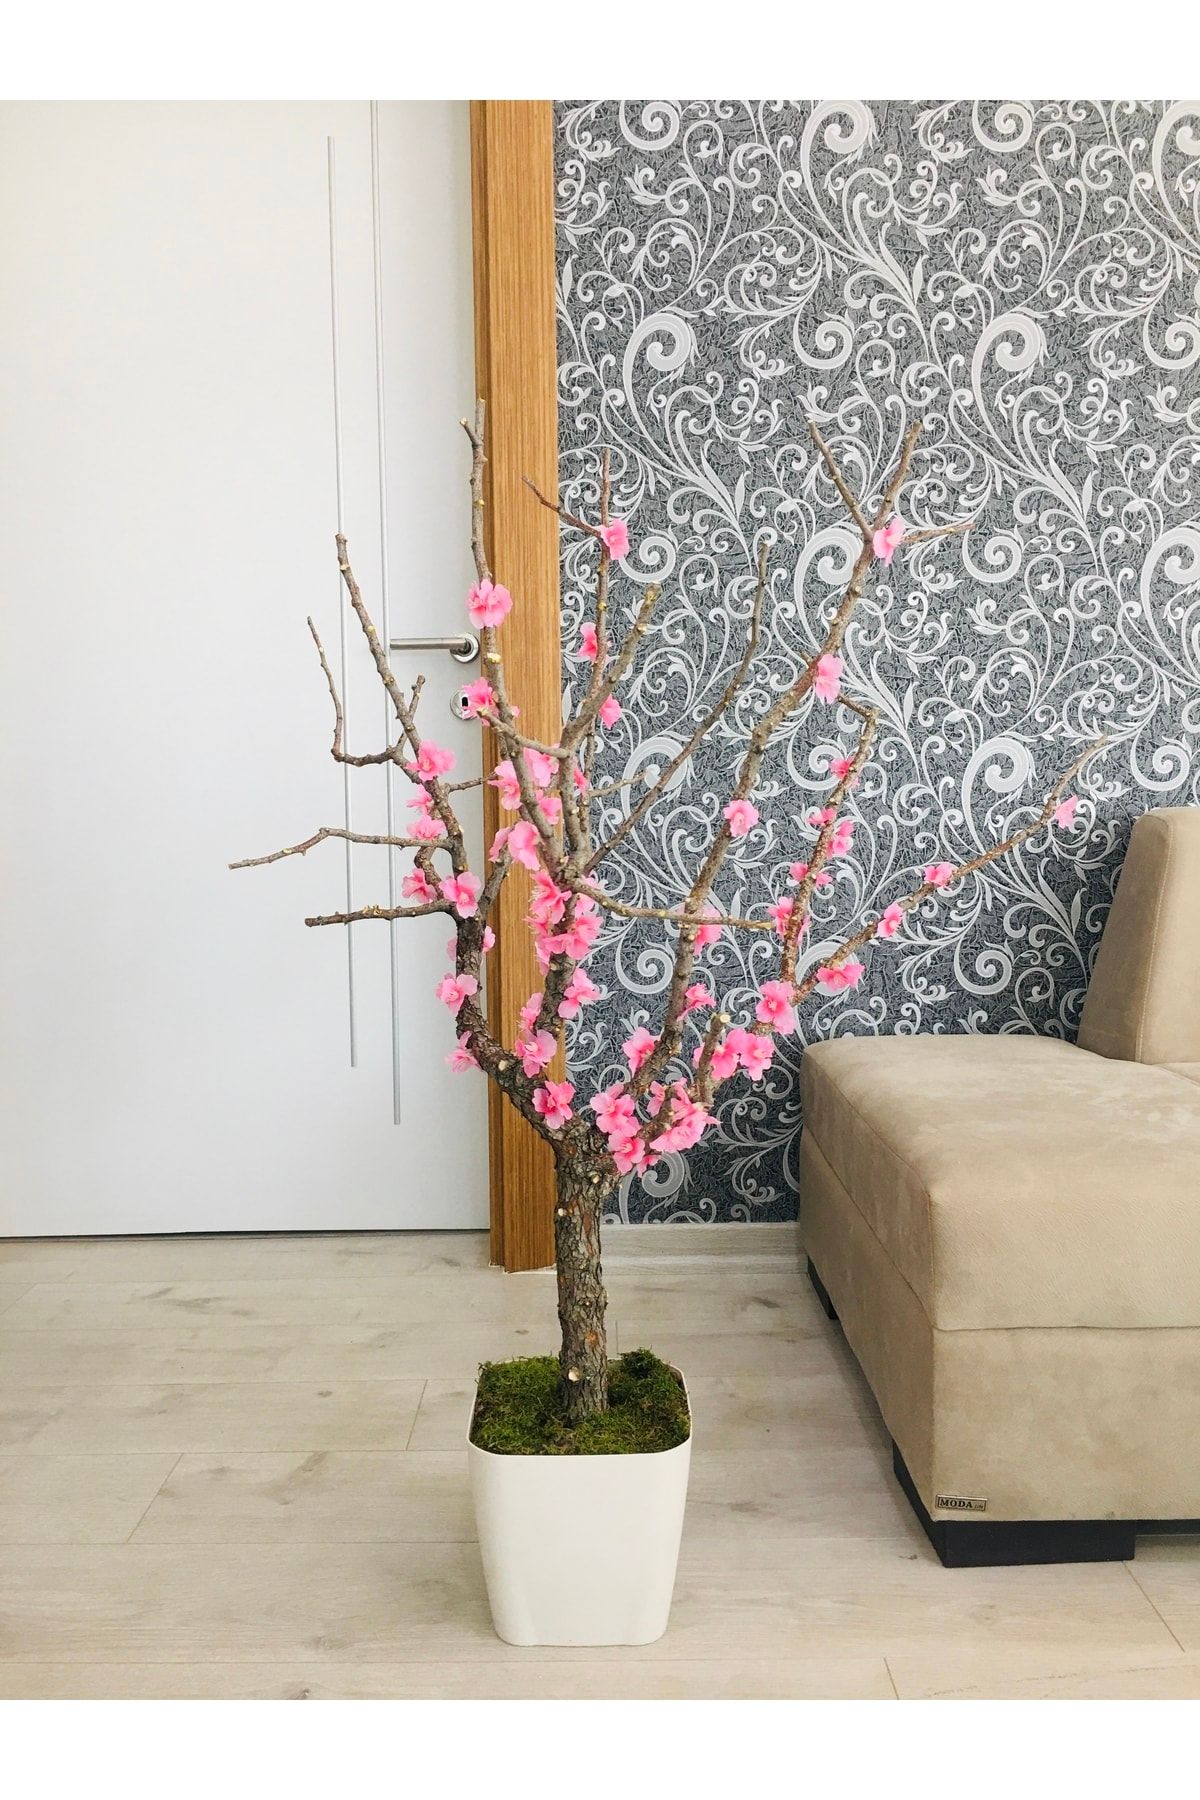 Asenya Yapay Çiçek 1 Adet 80-100 Cm Pembe Bahar Dalı Yapay Bitki Ağaç Saksıda Yapay Çiçek Bonsai Ağacı